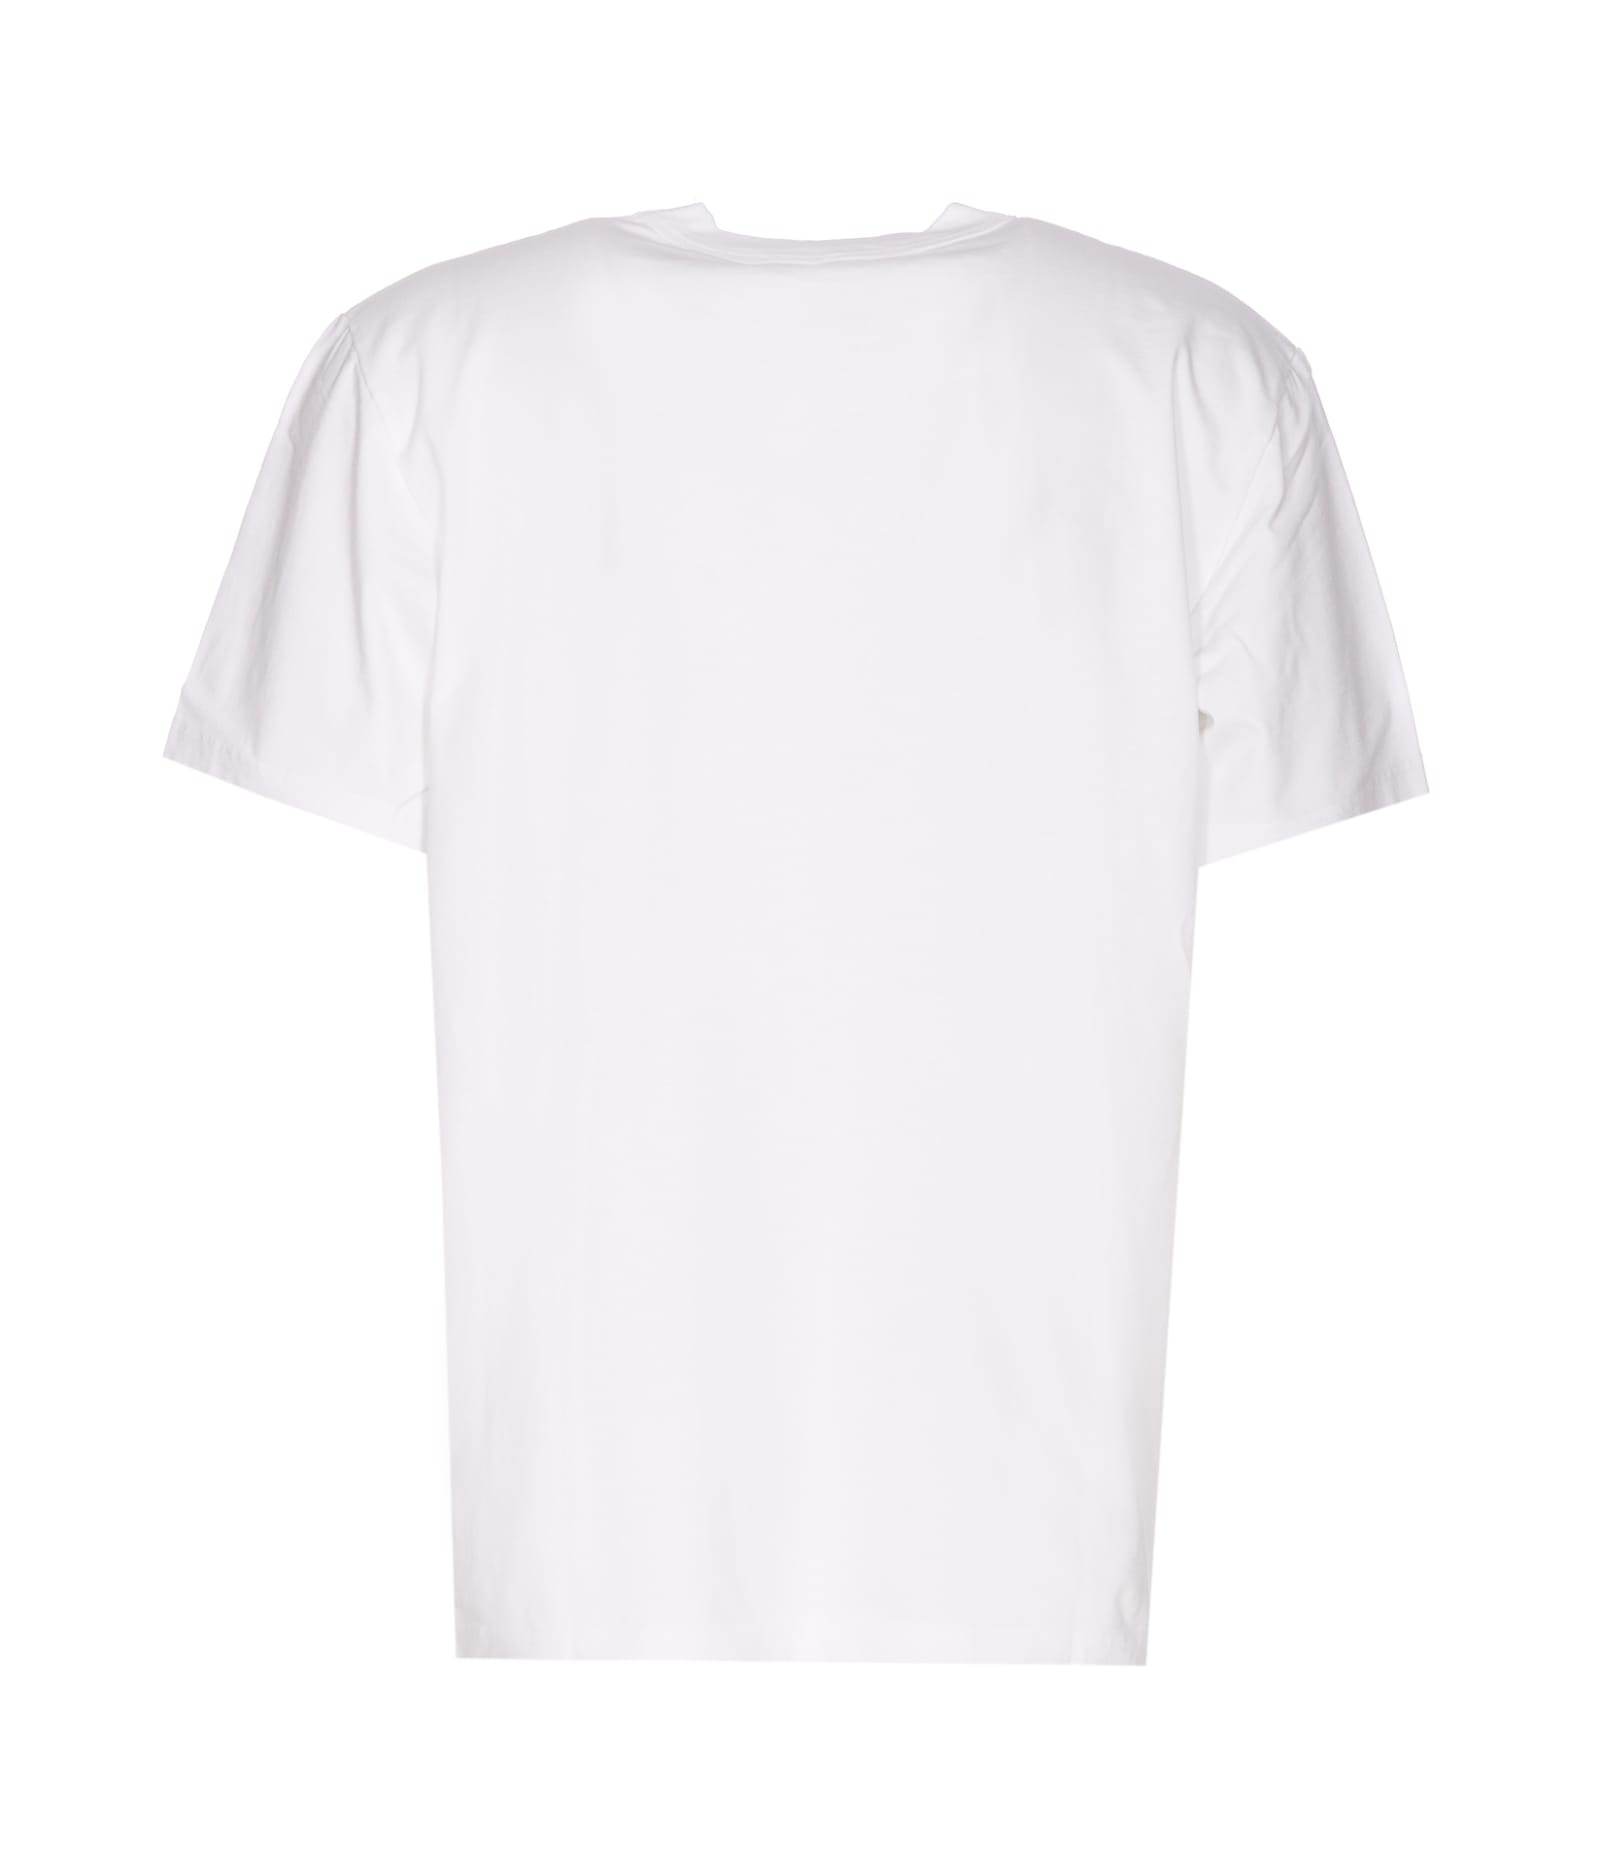 Shop Sunflower Master Logo T-shirt In White